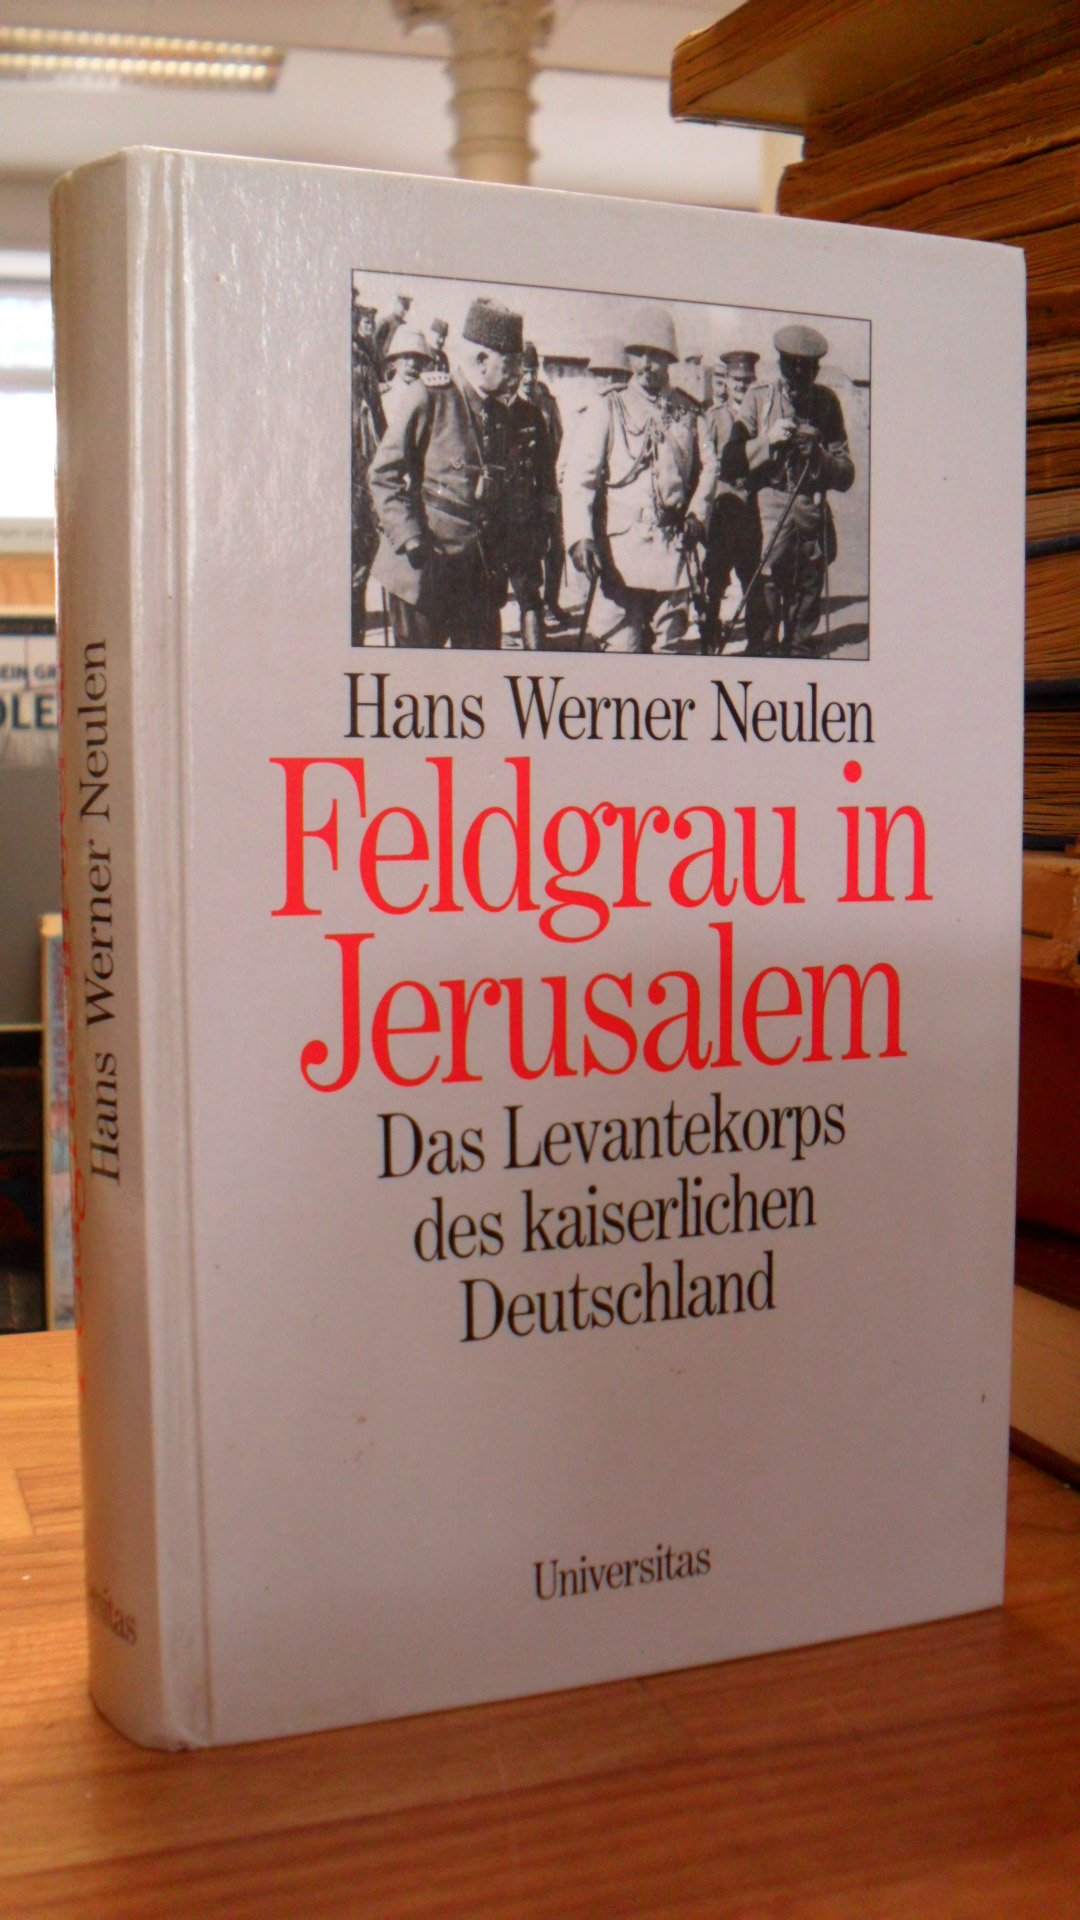 Neulen, Feldgrau in Jerusalem – Das Levantekorps des kaiserlichen Deutschland,